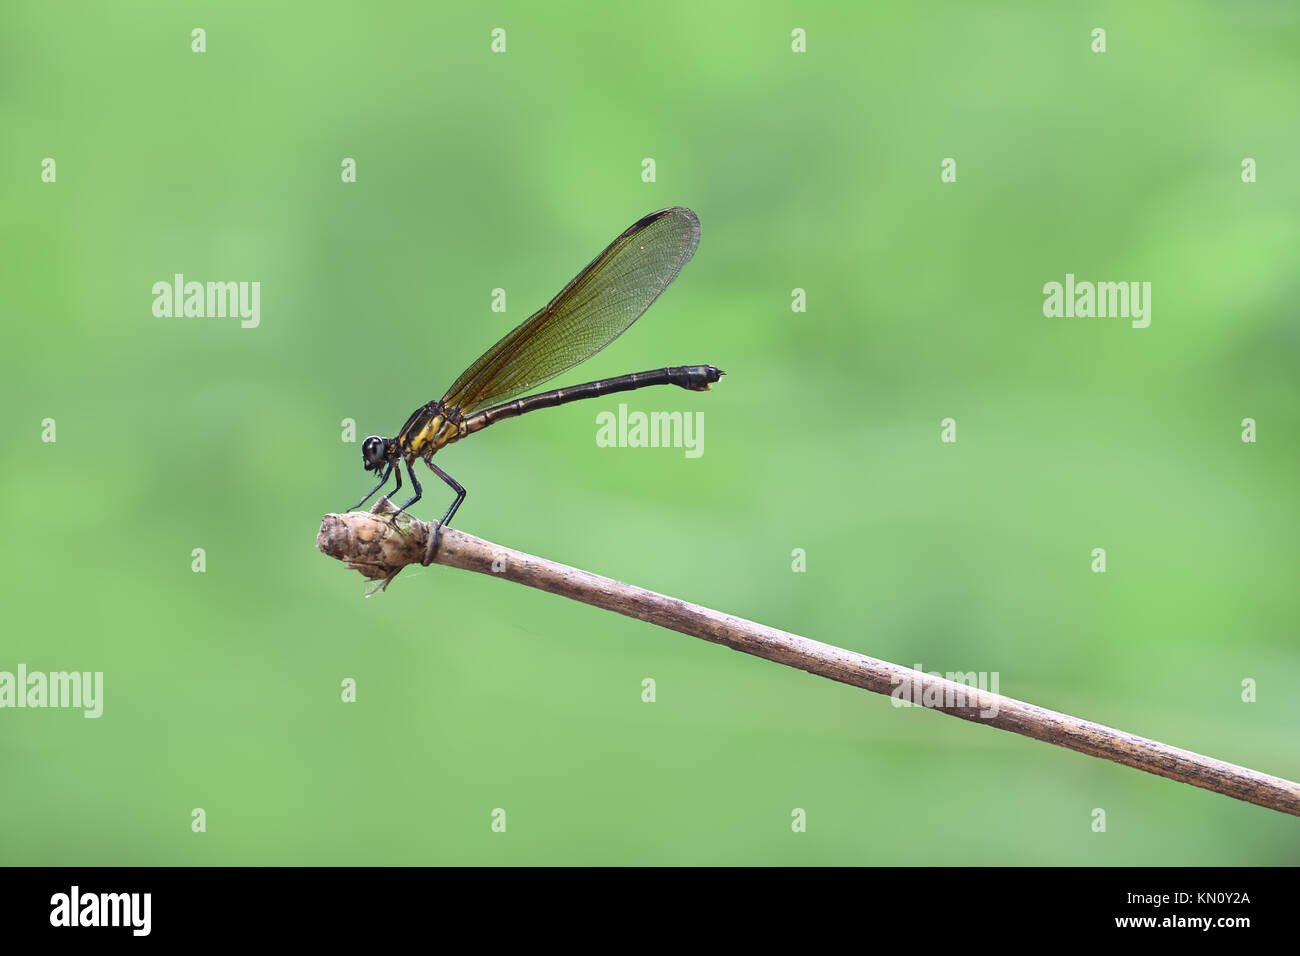 Damselfy jaune/Dragon Fly/Zygoptera assis sur le bord de la tige de bambou Banque D'Images